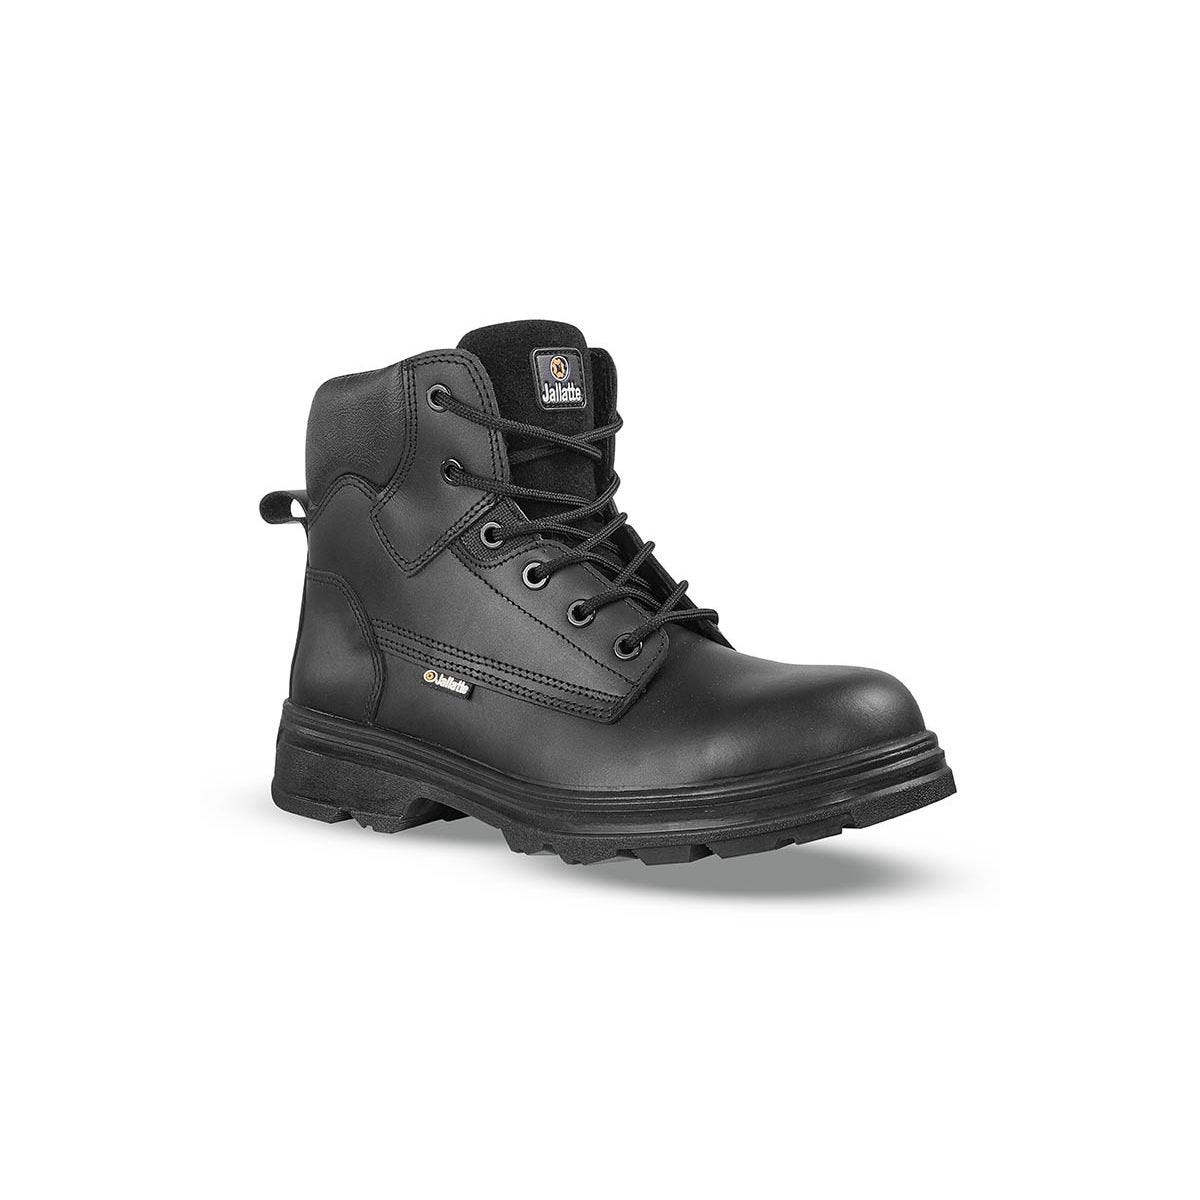 Chaussures de sécurité hautes JALGERAINT S3 - JALLATTE - Taille 37 0